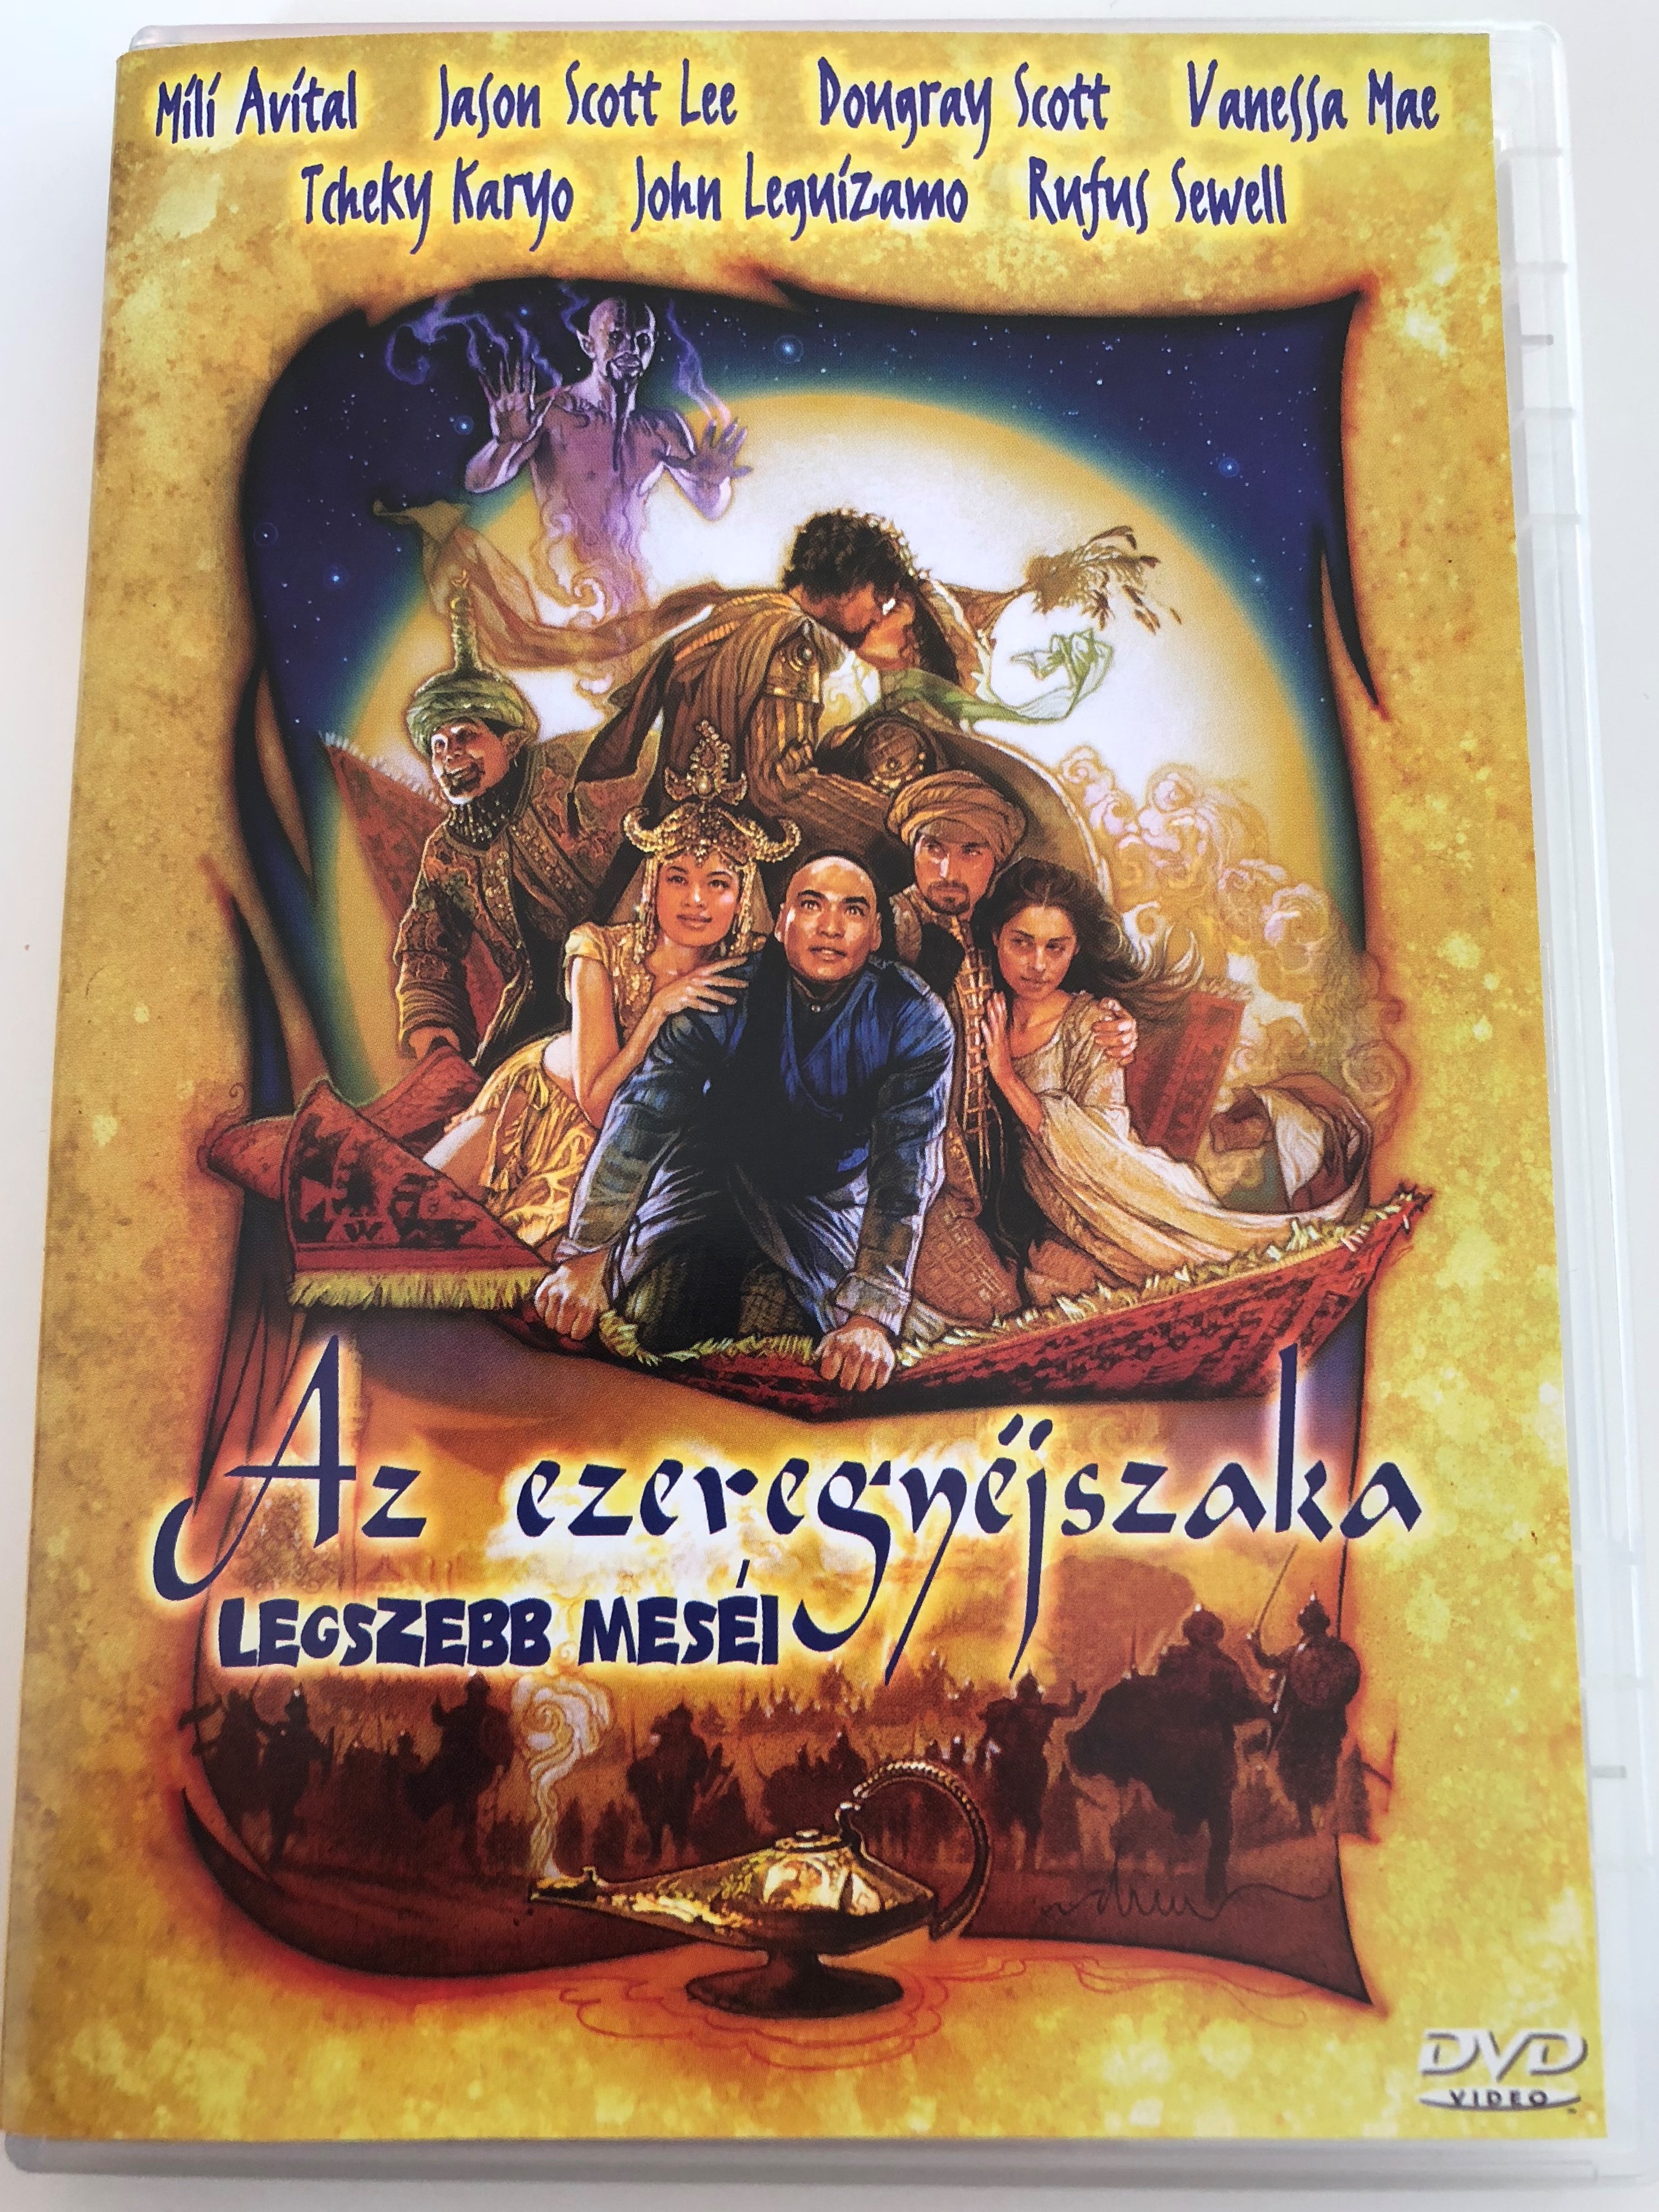 az-ezeregy-jszaka-legszebb-mes-i-dvd-2000-arabian-nights-directed-by-steve-barron-starring-mili-avital-jason-scott-lee-dougray-scott-vanessa-mae-1-.jpg